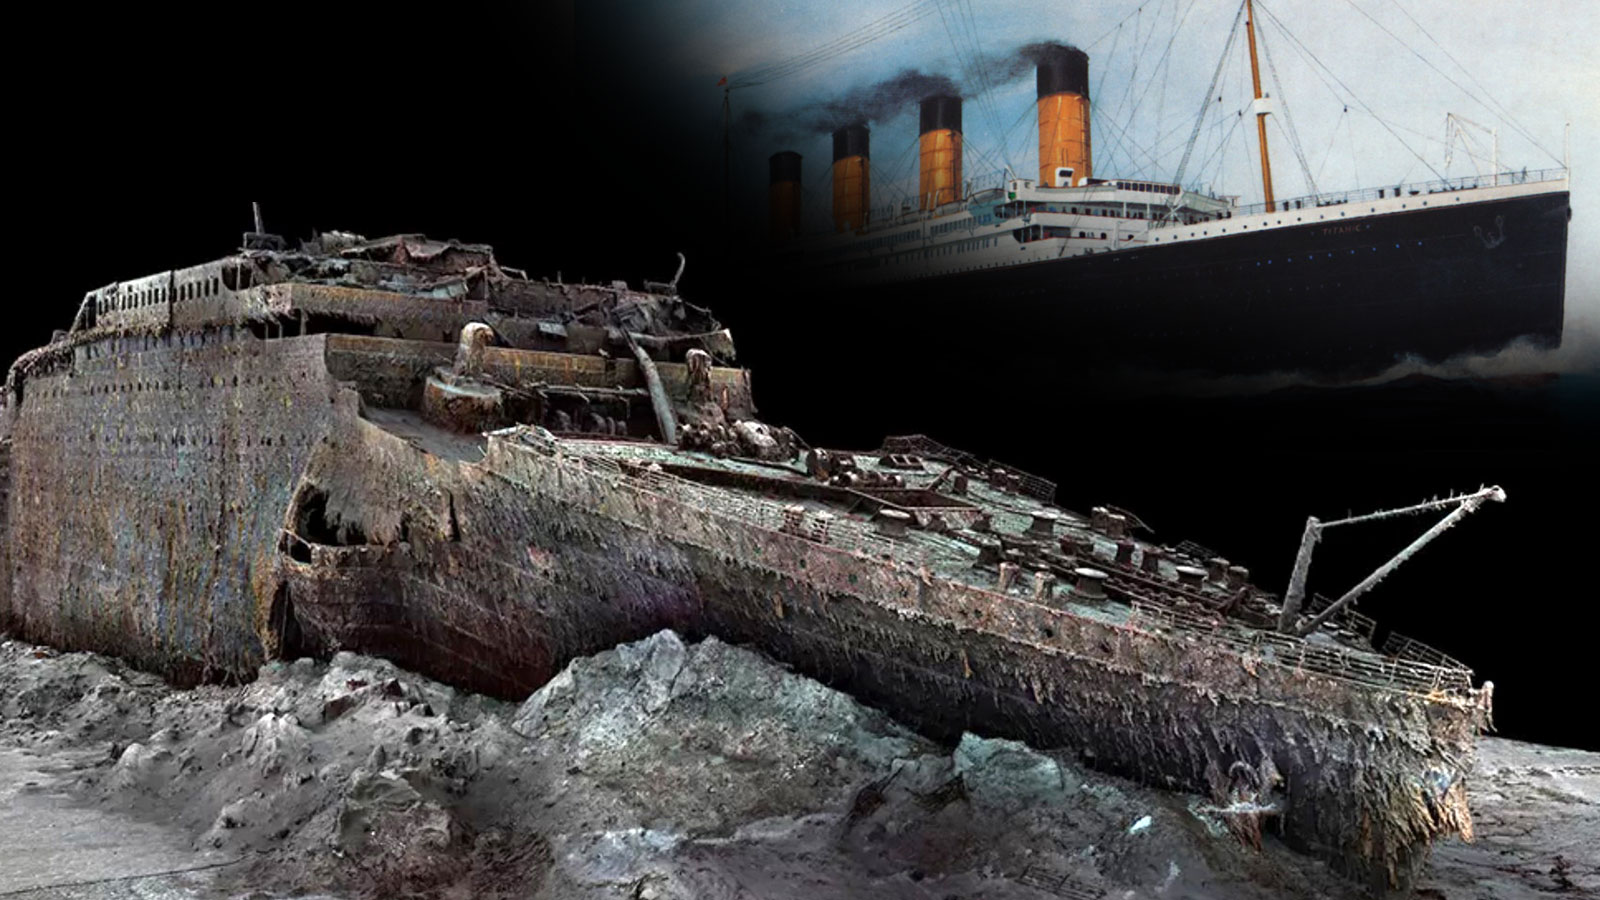 Những hình ảnh về xác tàu titanic dưới biển sâu #tiktoknews #tiepthigi... |  TikTok